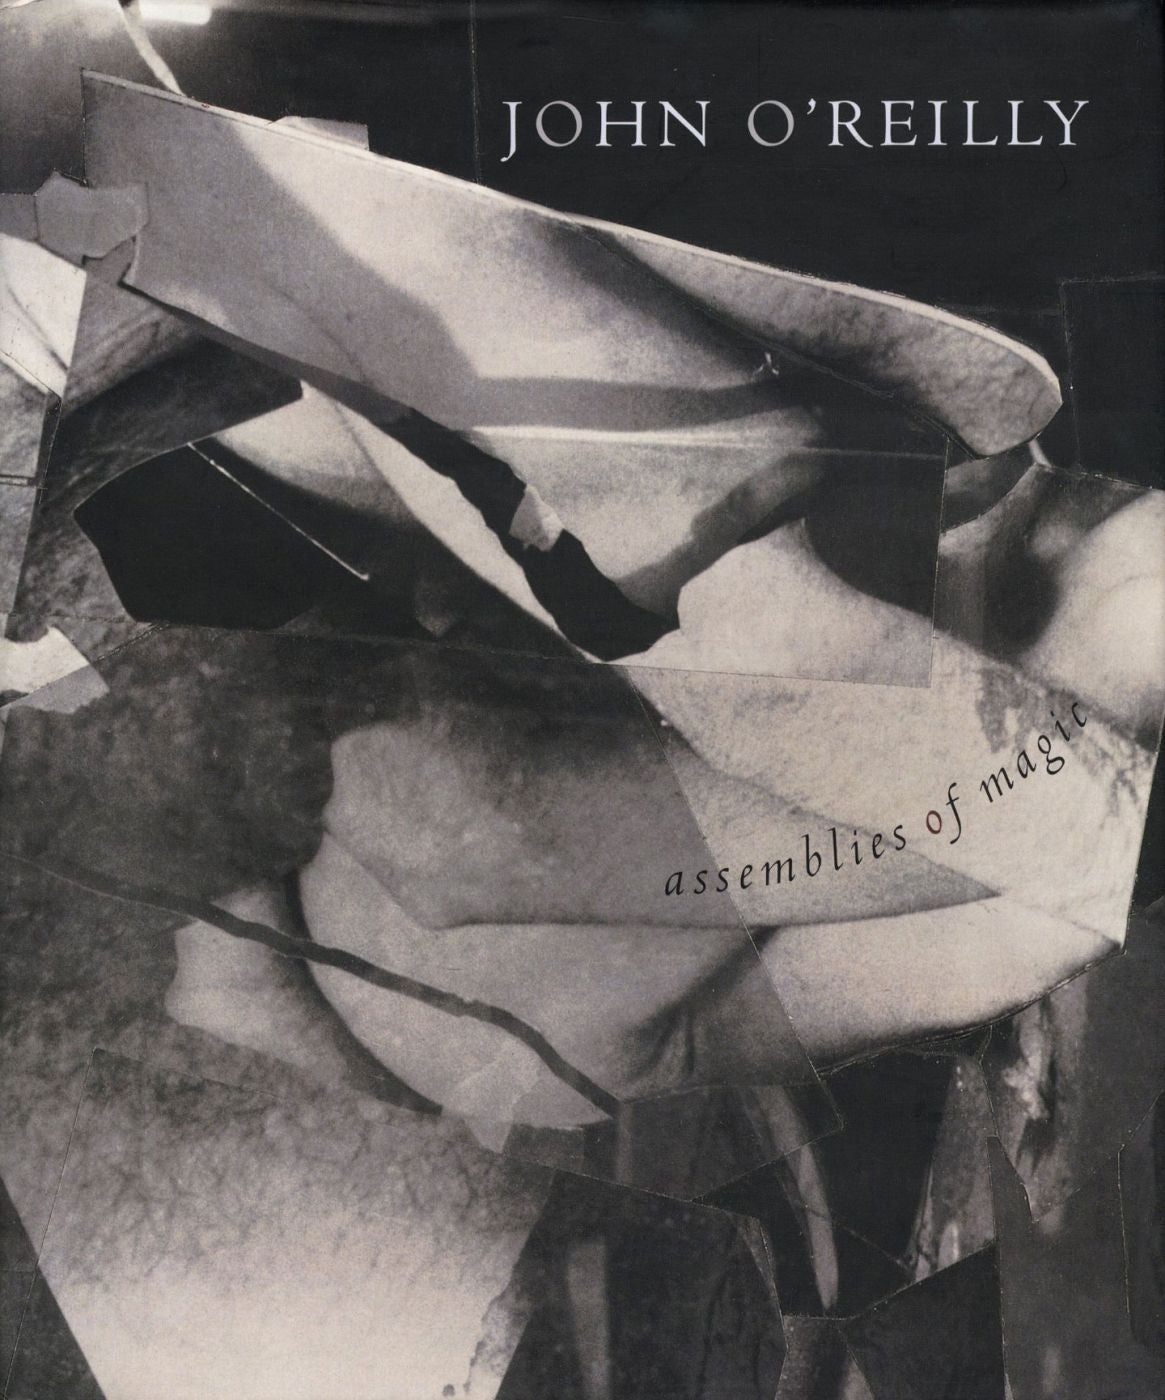 John O'Reilly: Assemblies of Magic